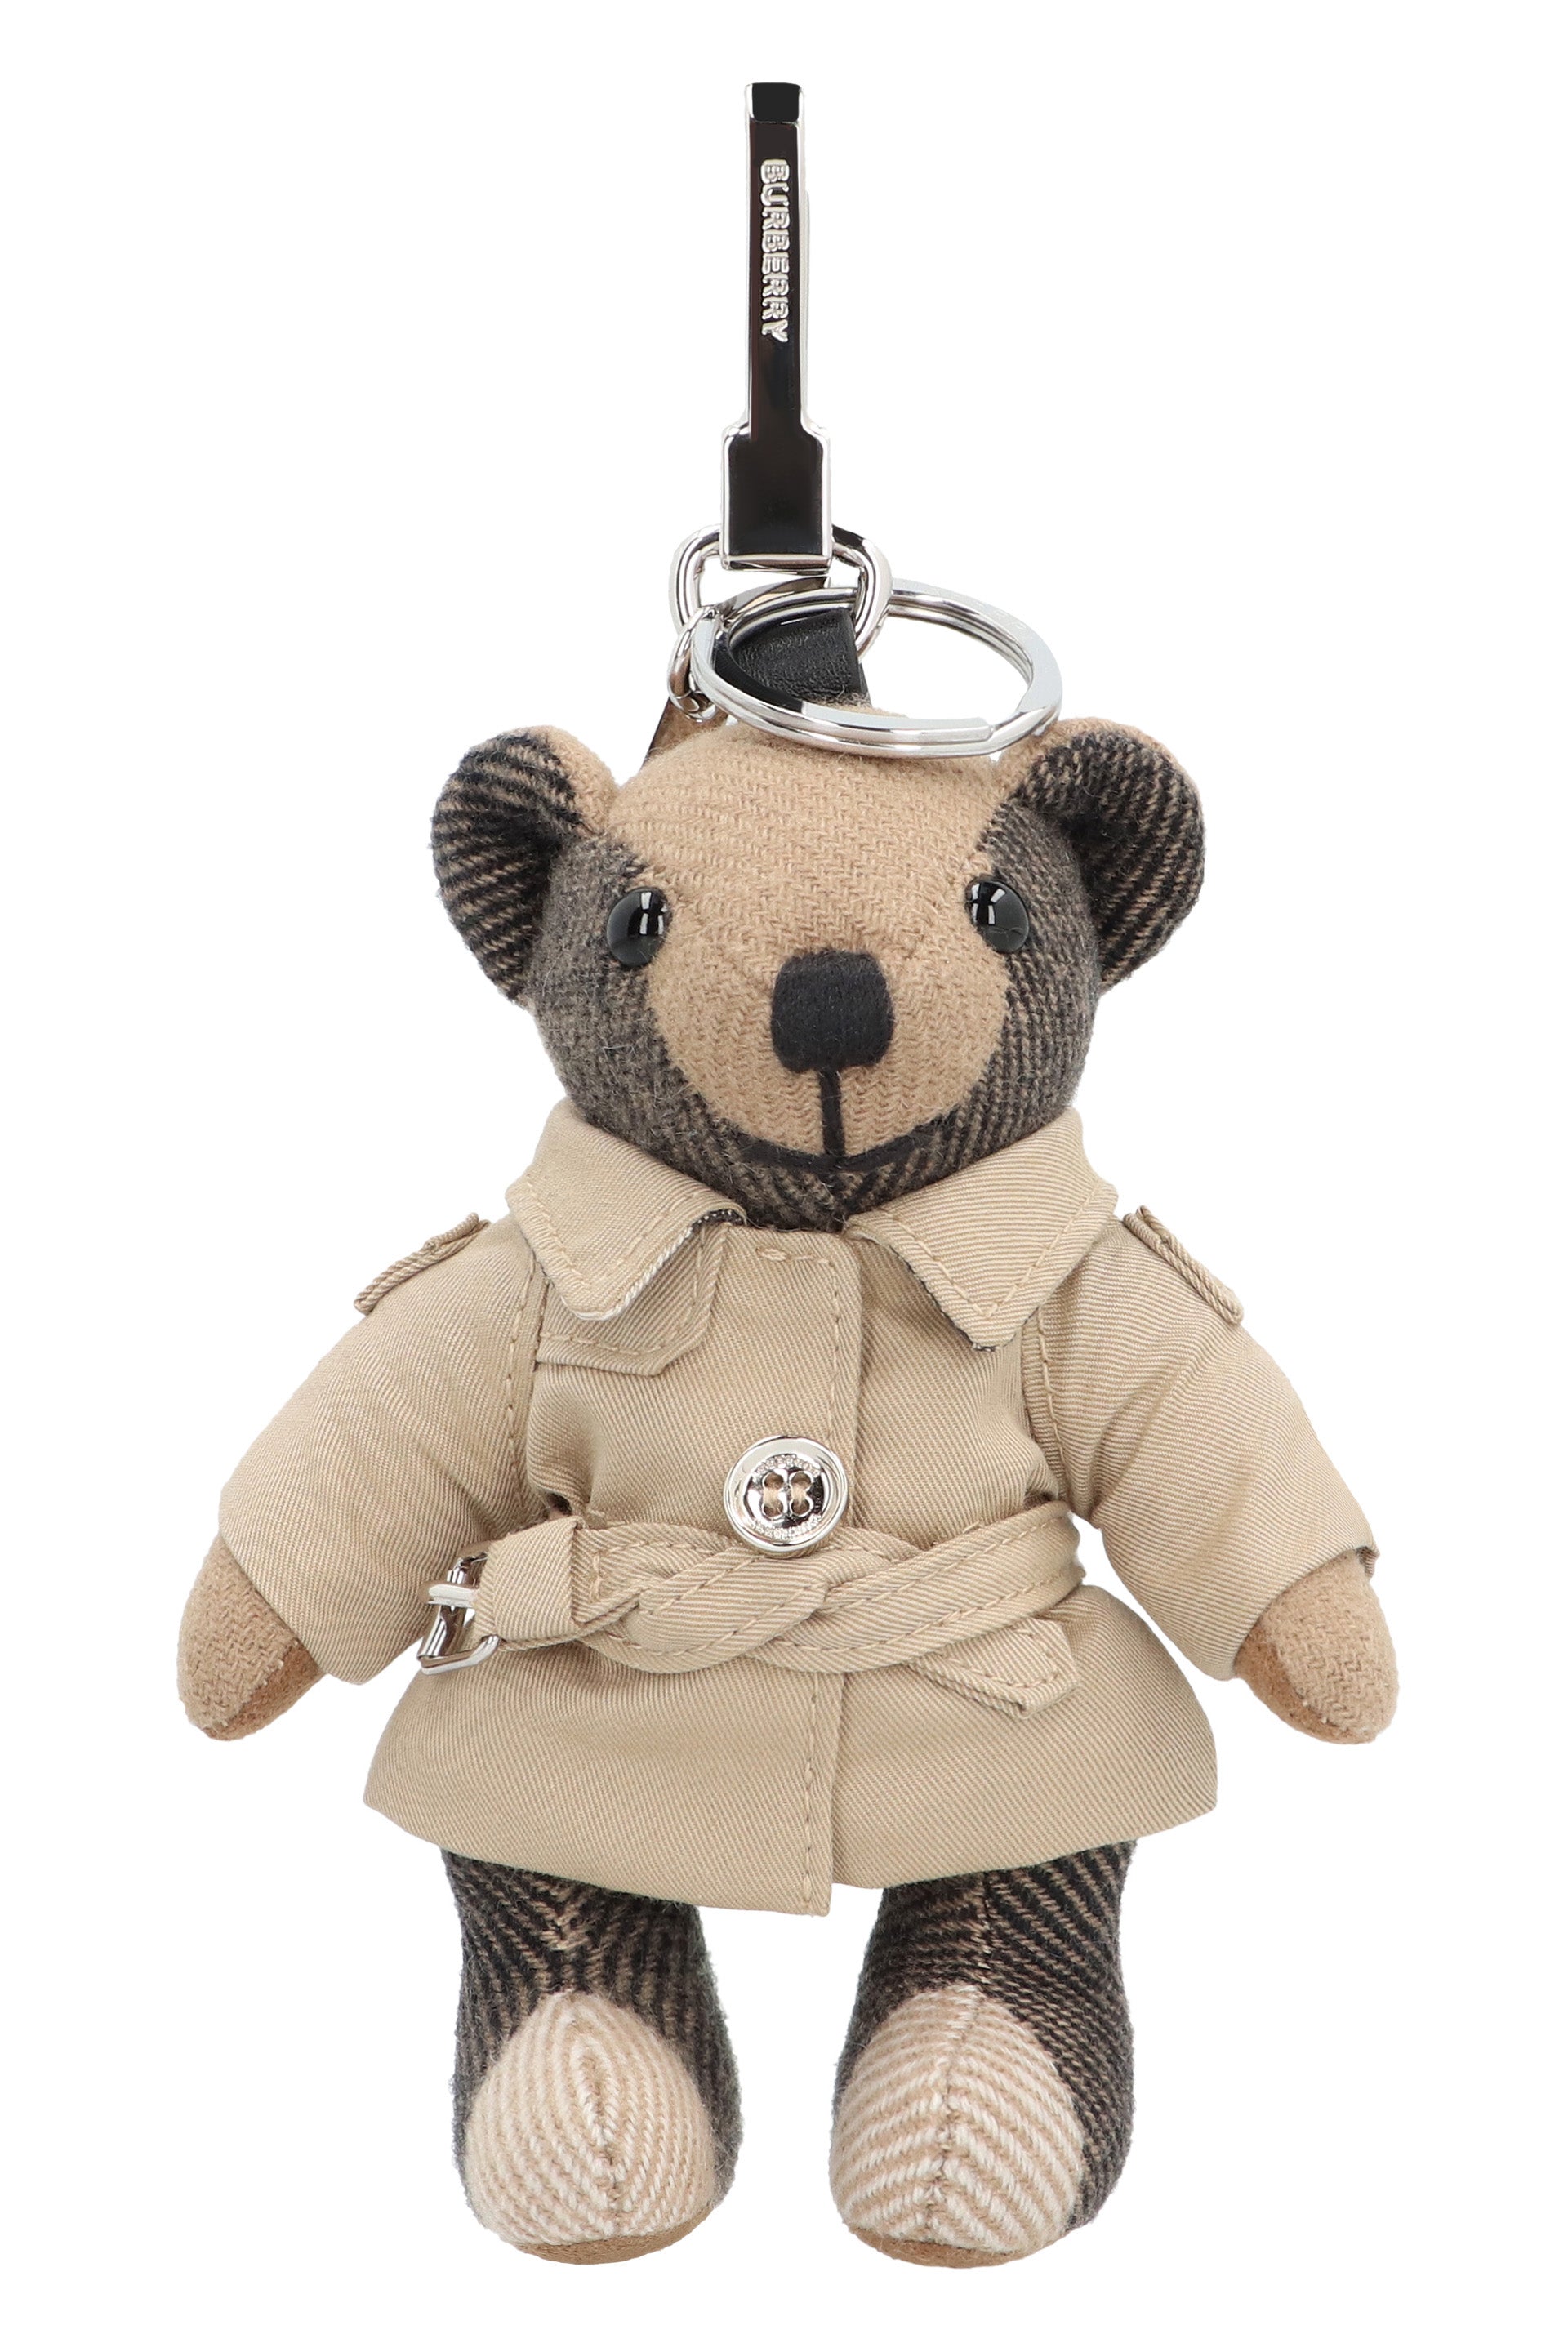 TEDDY BEAR CUDDLE GINGERBREAD MAN GIFT KEY RING HANGING BAG CHARM ADD NAME  | eBay